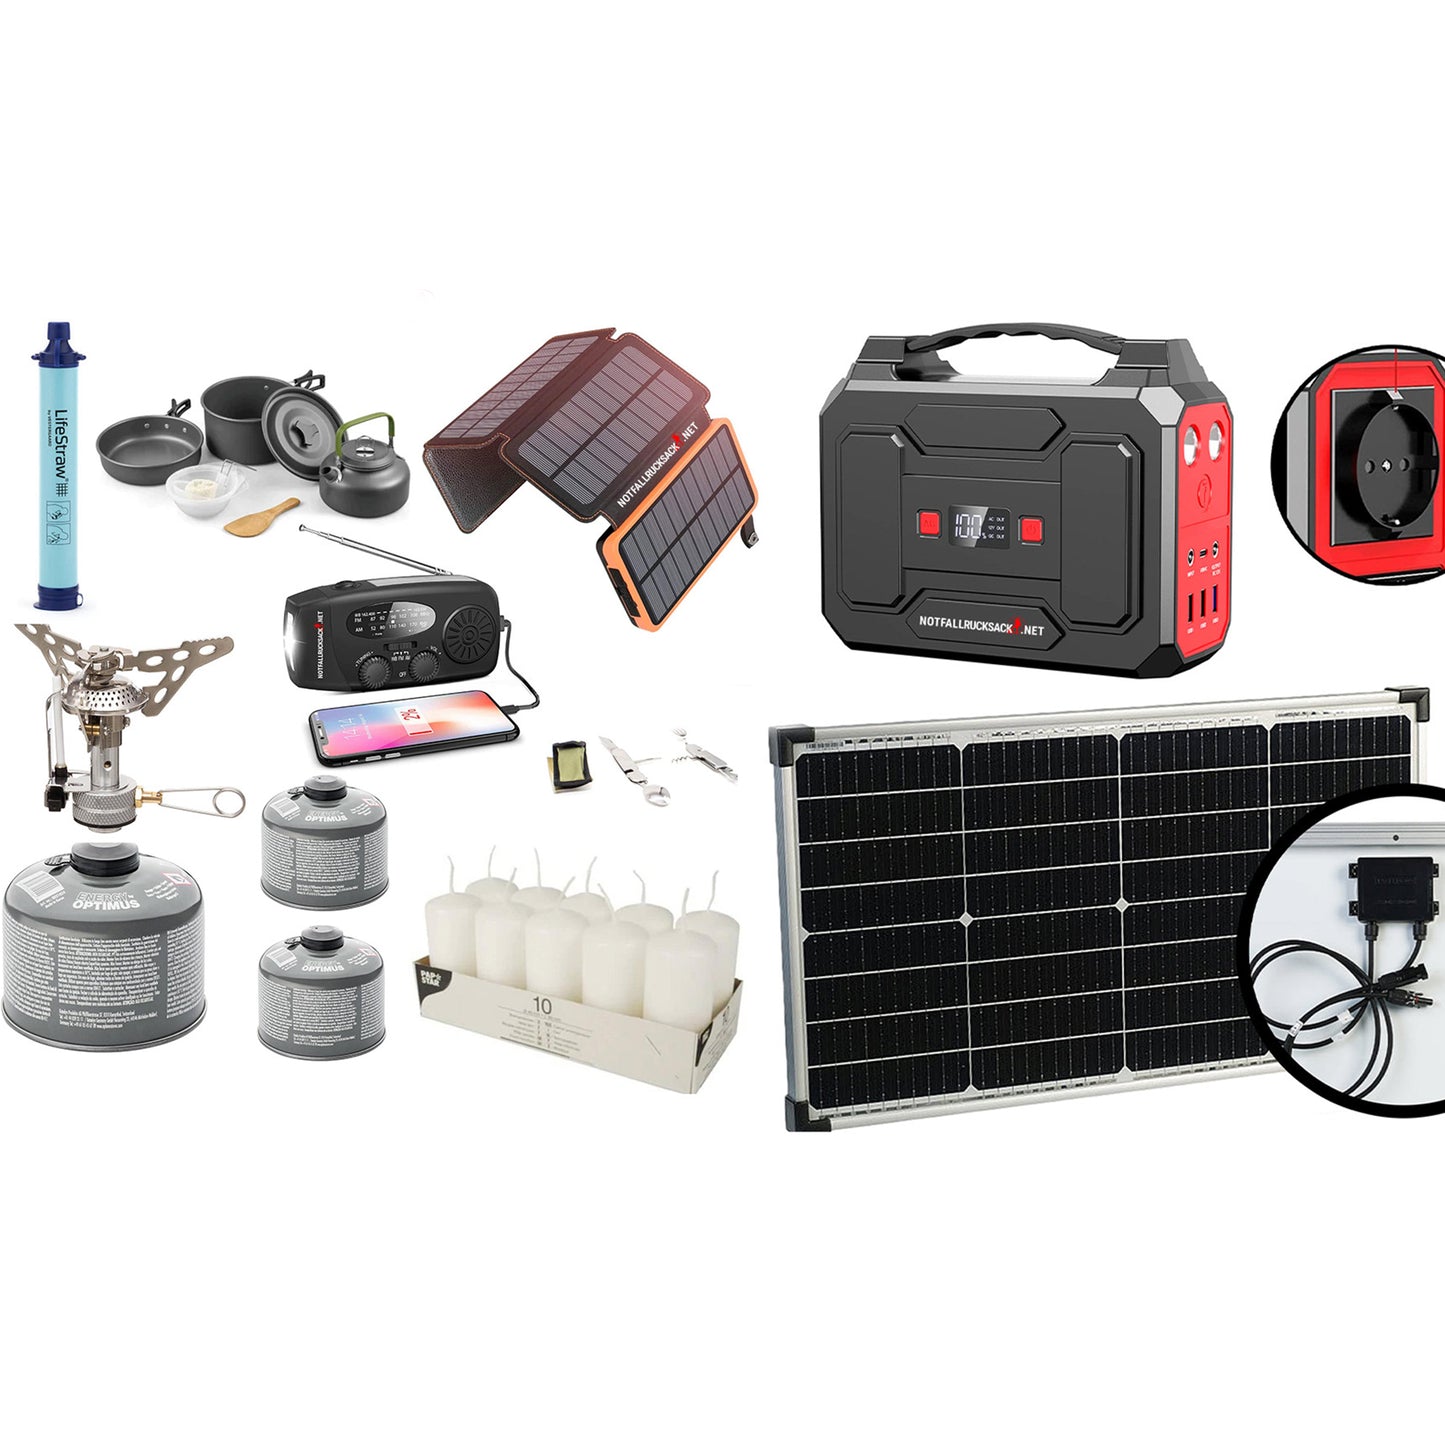 Strömavbrottspaket Extreme Blackout kit - med megakraftverk, solpanel, gasspis, matlagningsset, bestick, solenergibank, vattenfilter, ljus och mycket mer